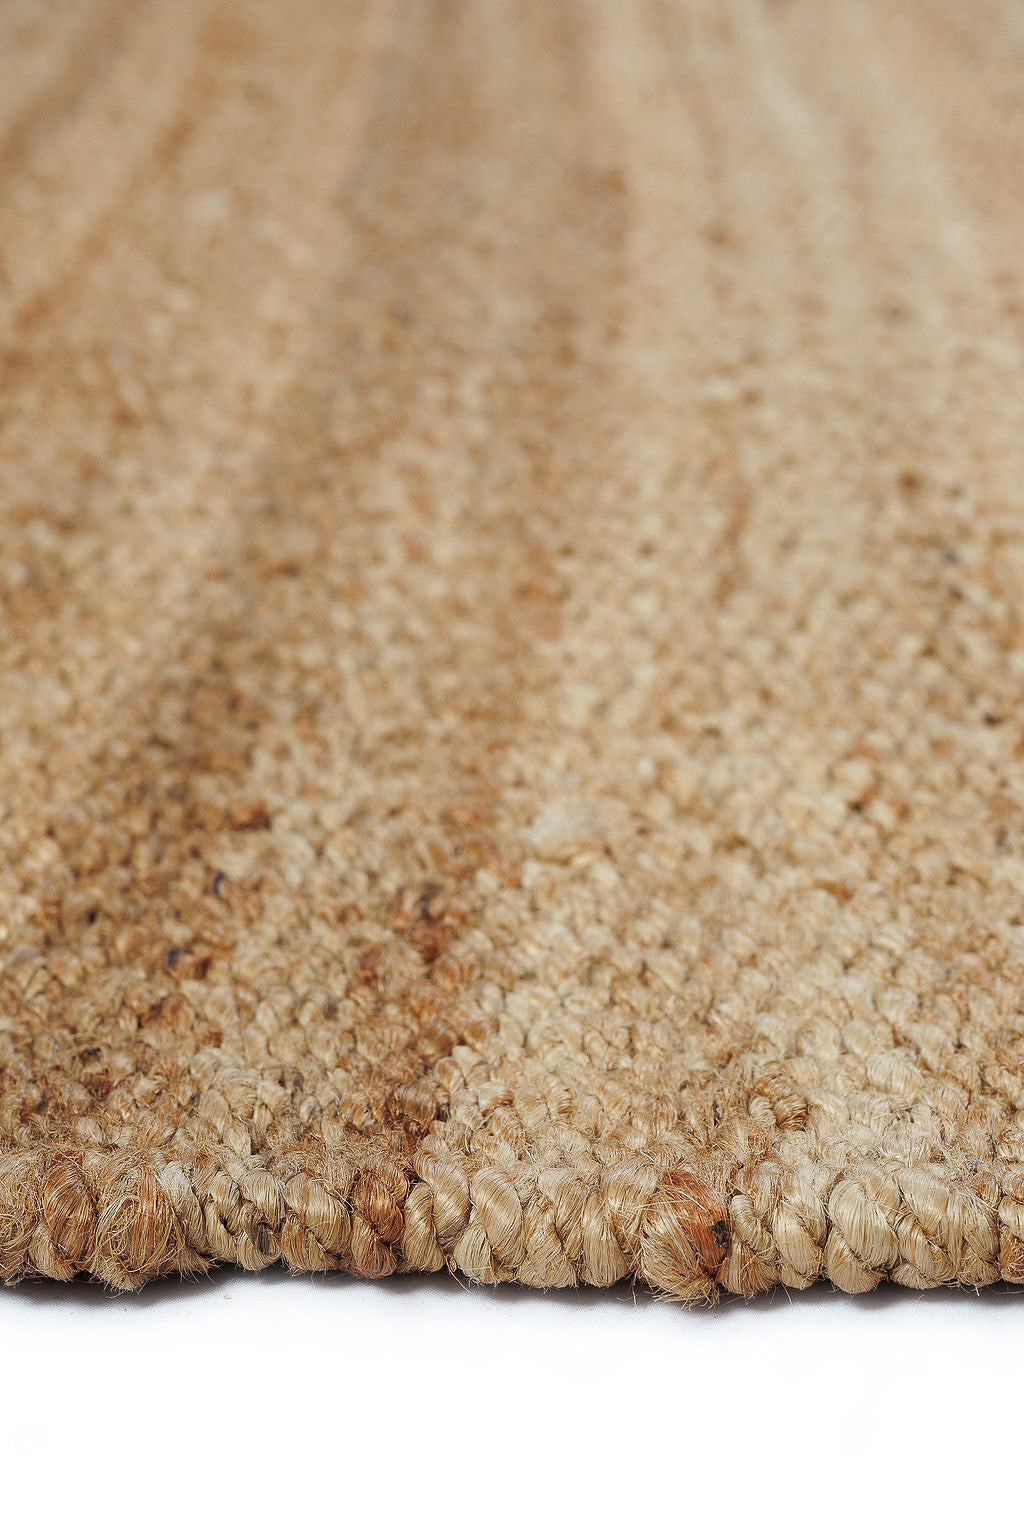 Plain brown woven rug